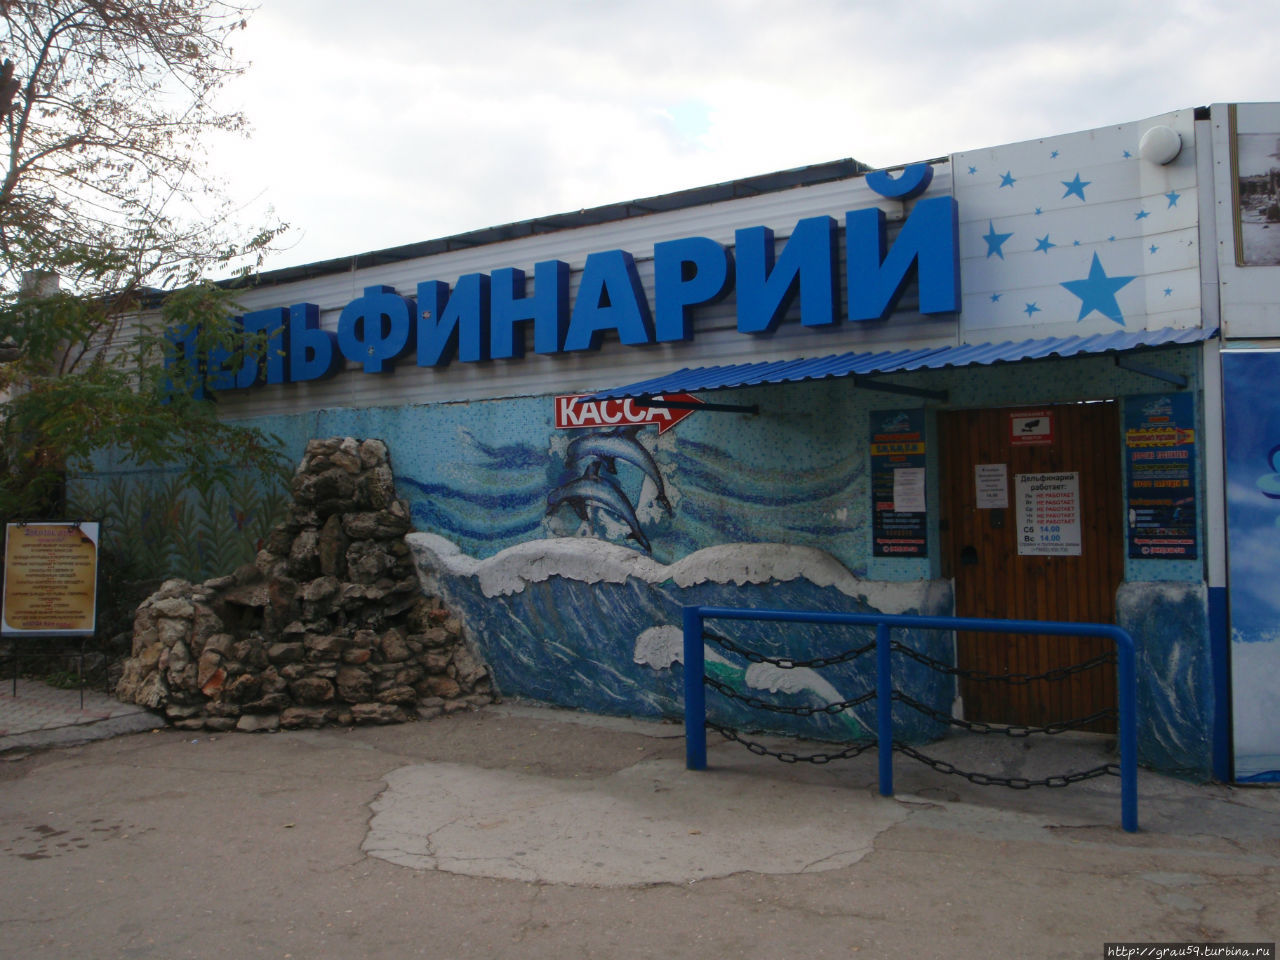 Вдоль по набережной Корнилова Севастополь, Россия